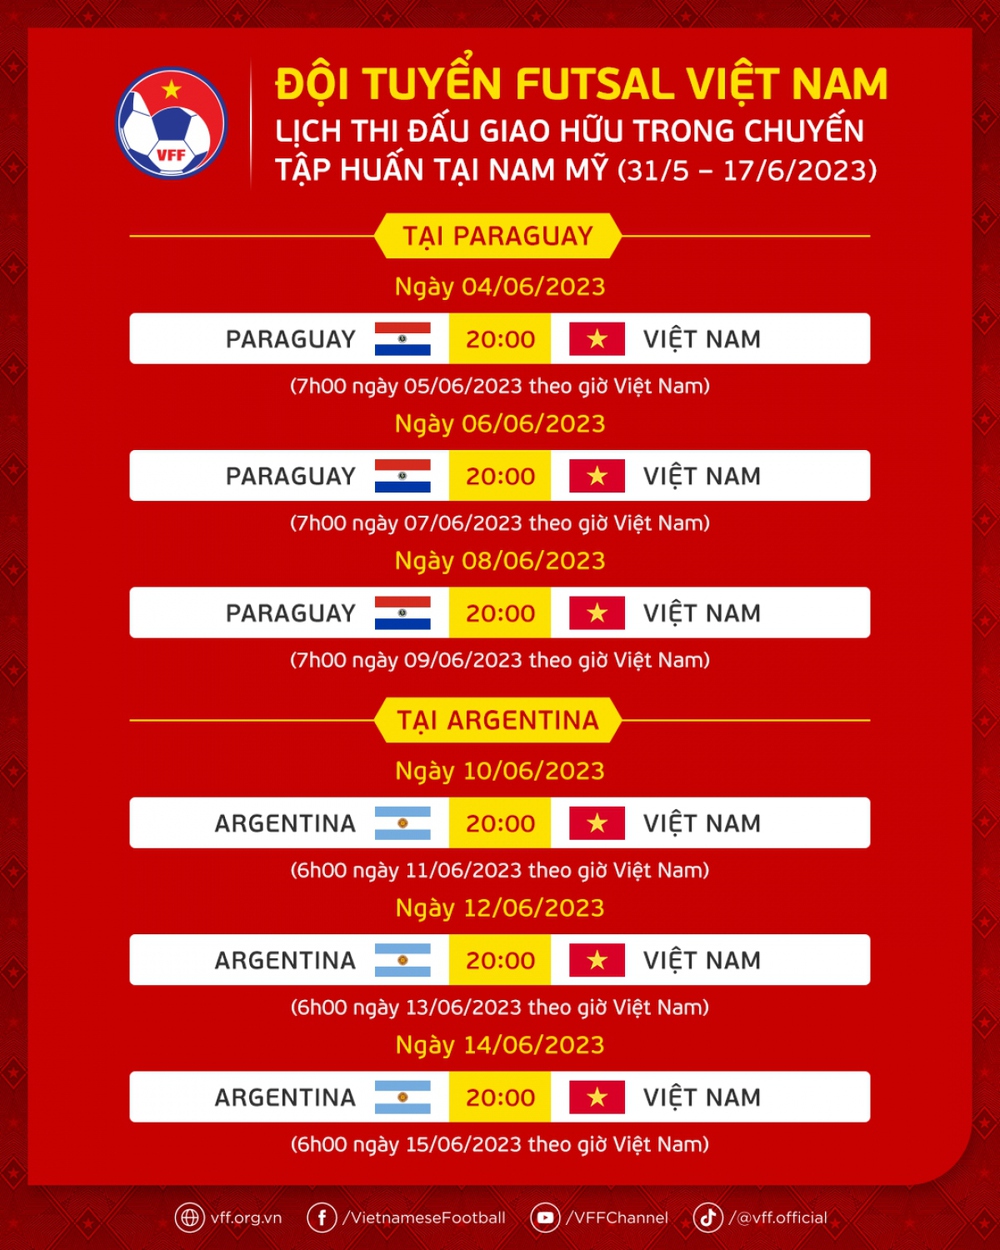 Lịch thi đấu của ĐT Futsal Việt Nam trước Paraguay và Argentina - Ảnh 1.